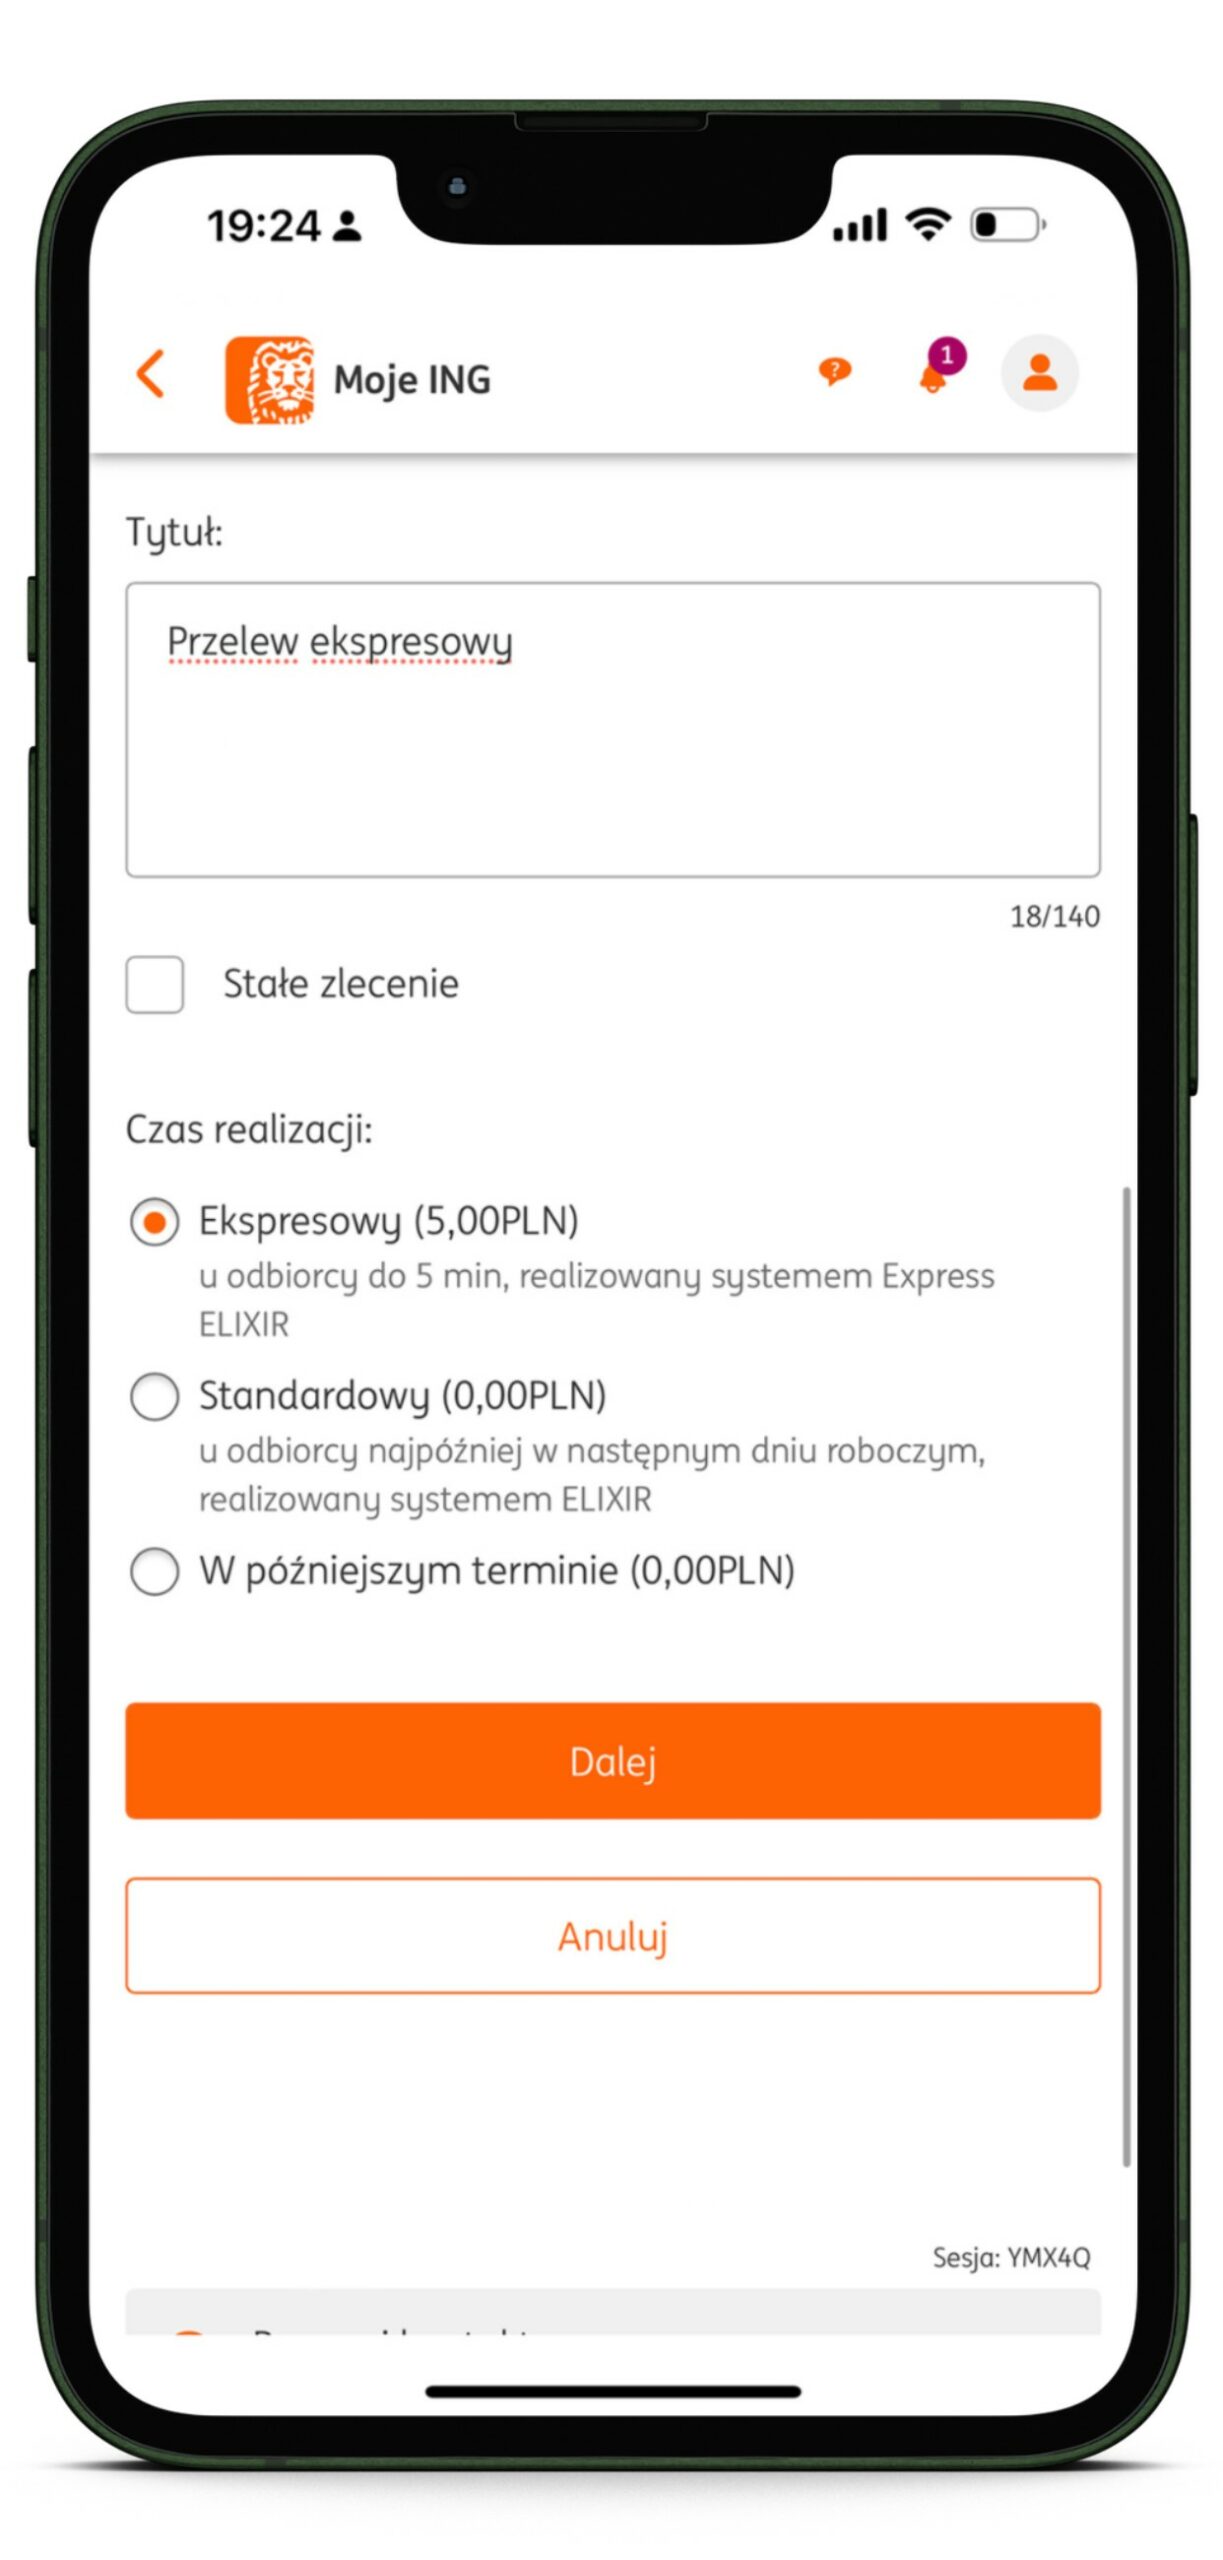 Zrzut ekranu z aplikacji Moje ING pokazujący proces dokonywania przelewu natychmiastowego w aplikacji mobilnej Banku